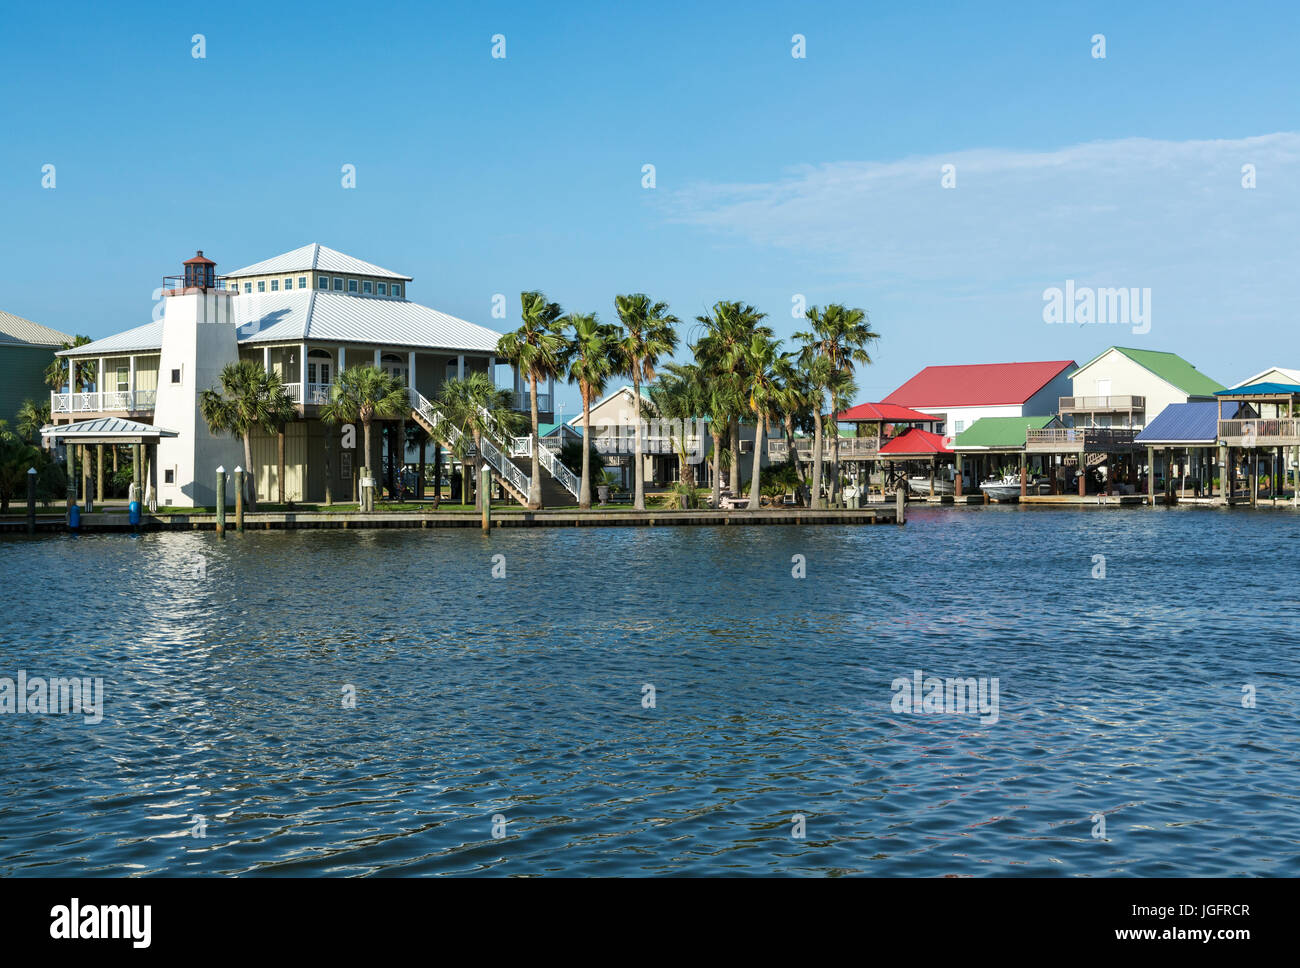 In Louisiana, parrocchia di Lafourche, Port Fourchon, Pointe Fourchon, waterfront comunità residenziale Foto Stock